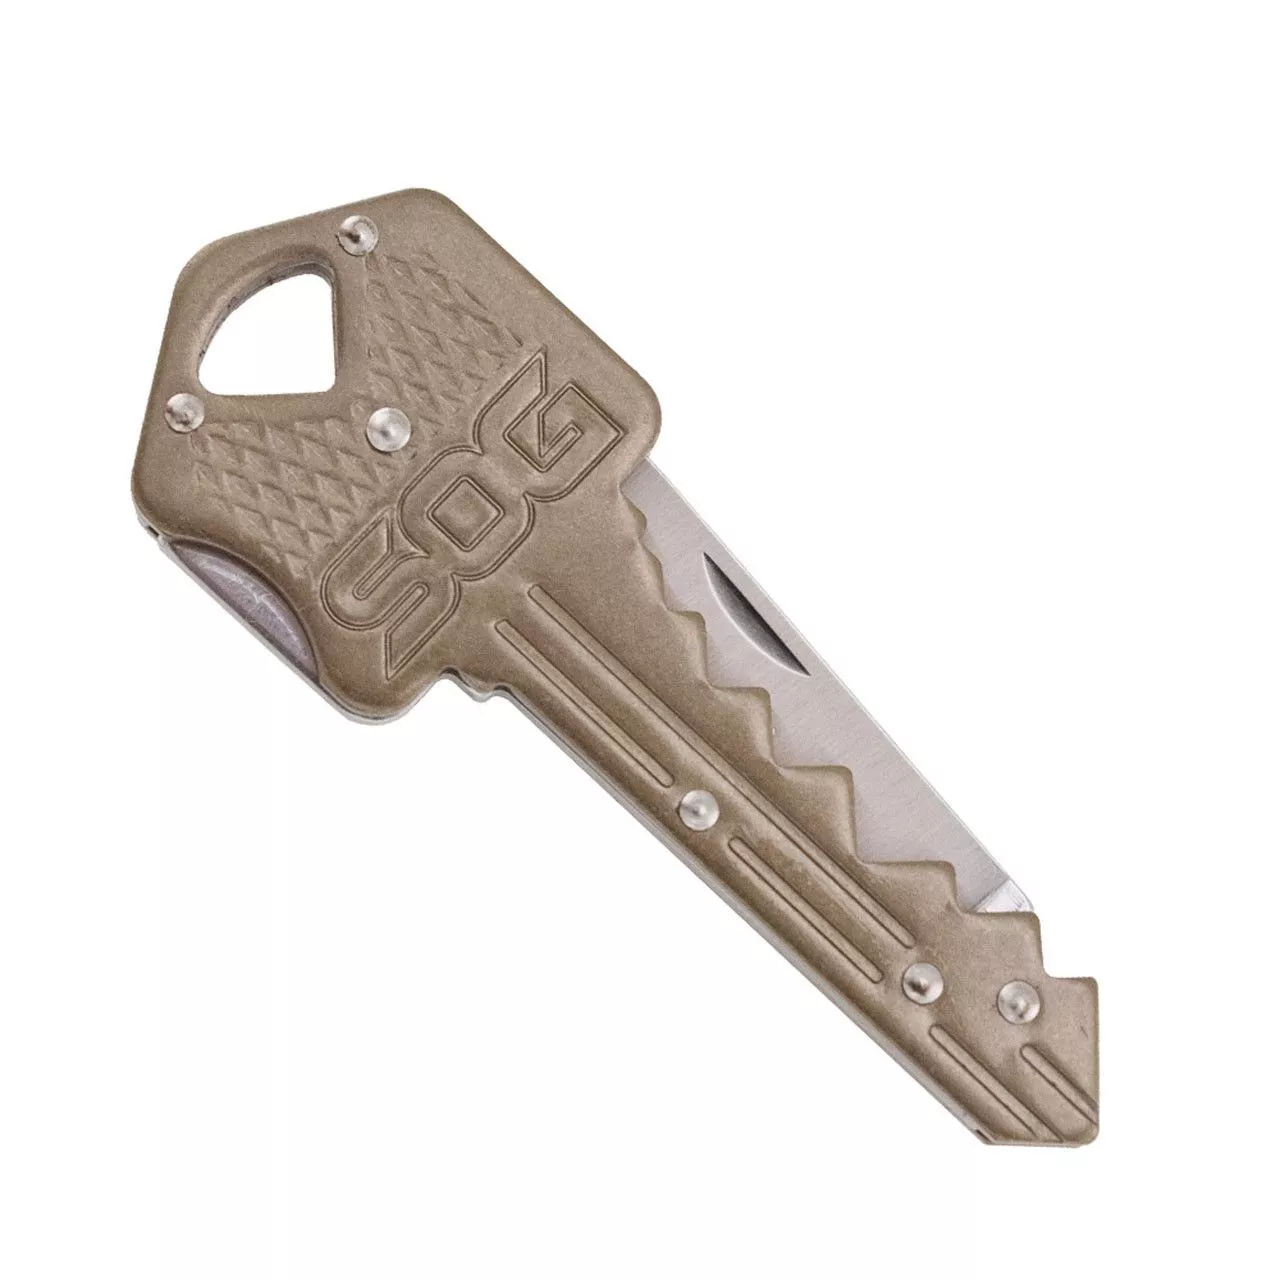 Брелок SOG ключ-нож цвет стальной матовый